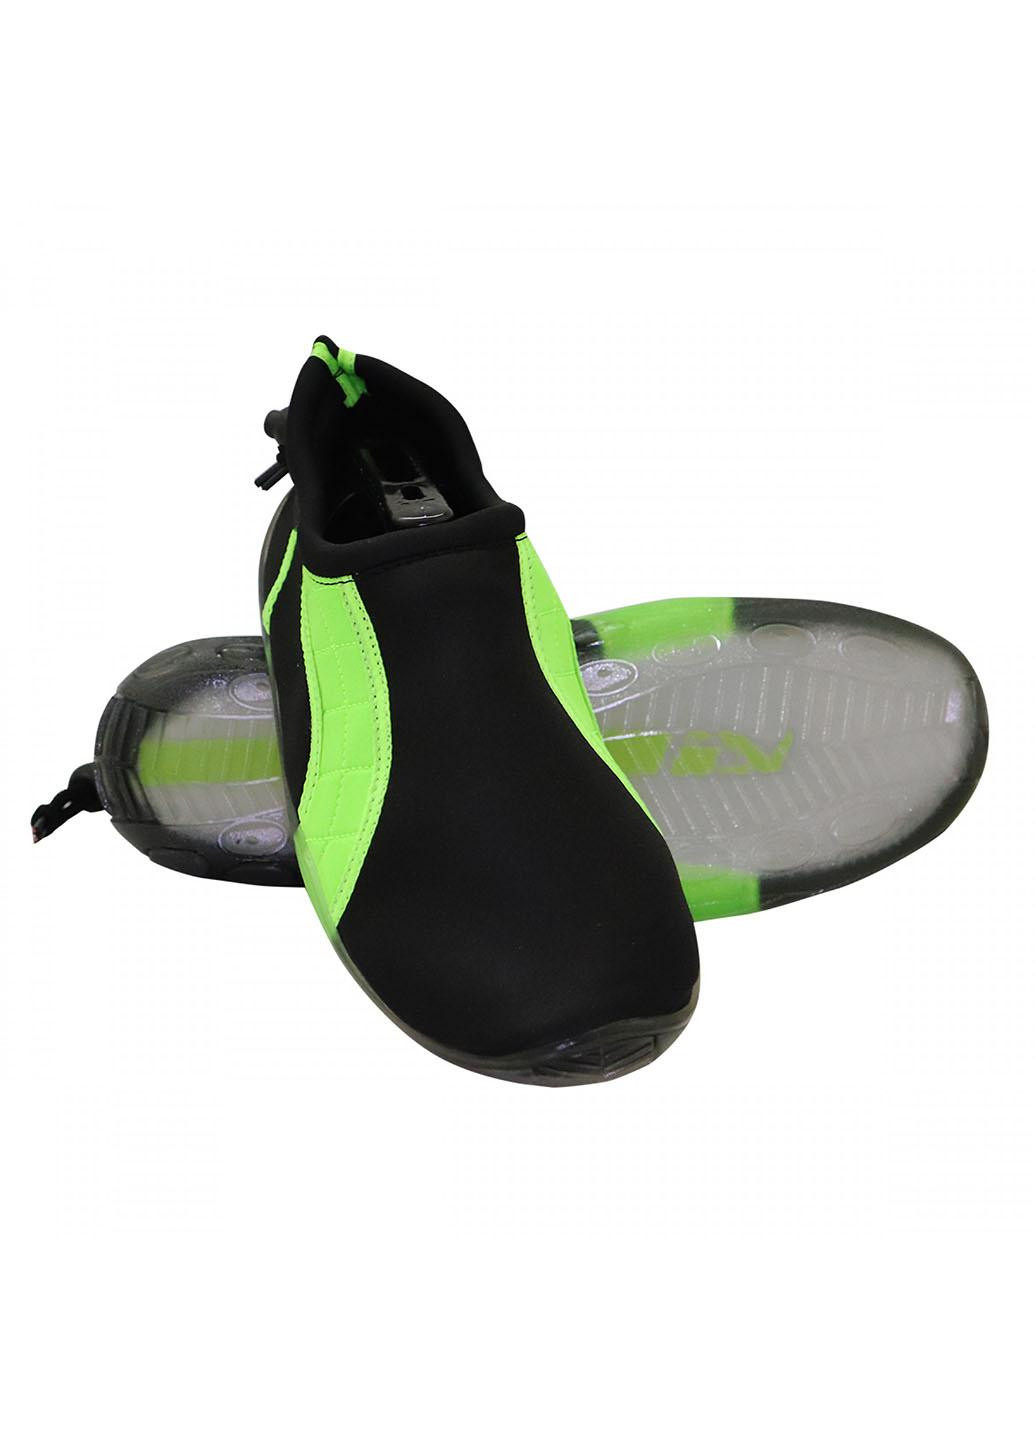 Обувь для пляжа и кораллов (аквашузы) SV-GY0004-R44 Size 44 Black/Green SportVida (258486784)